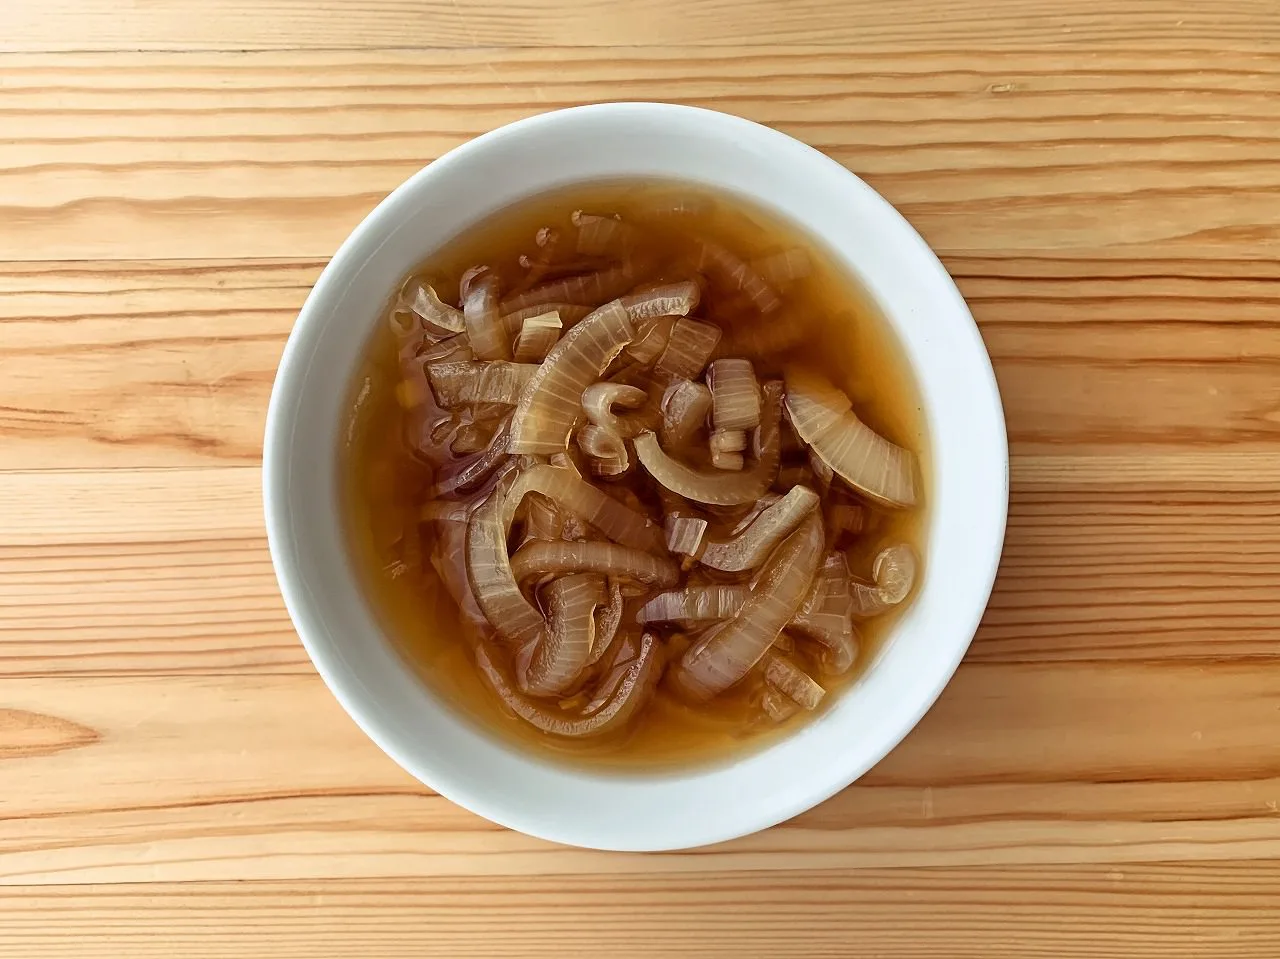 【野菜ひとつ】玉ねぎの冷製和風スープ